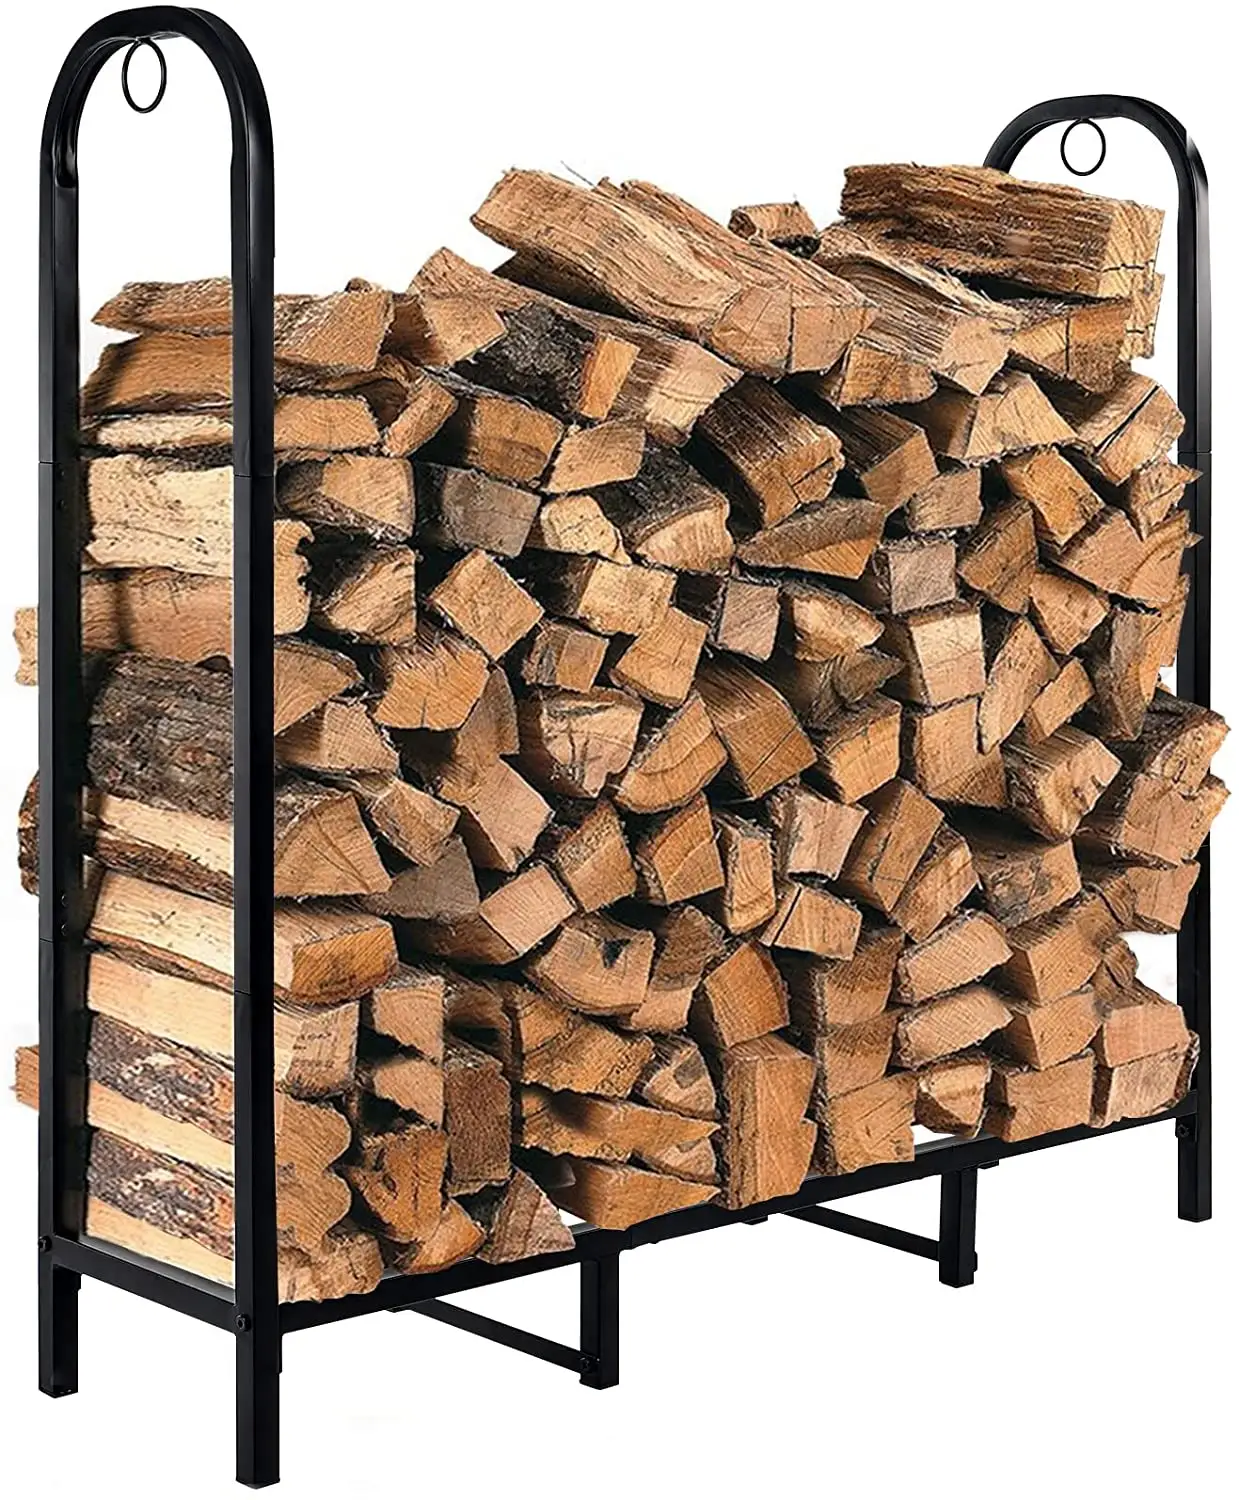 Support de stockage de bois de cheminée, support de bûches à bois, à l'intérieur ou à l'extérieur, pour foyer ou foyer revêtu de poudre